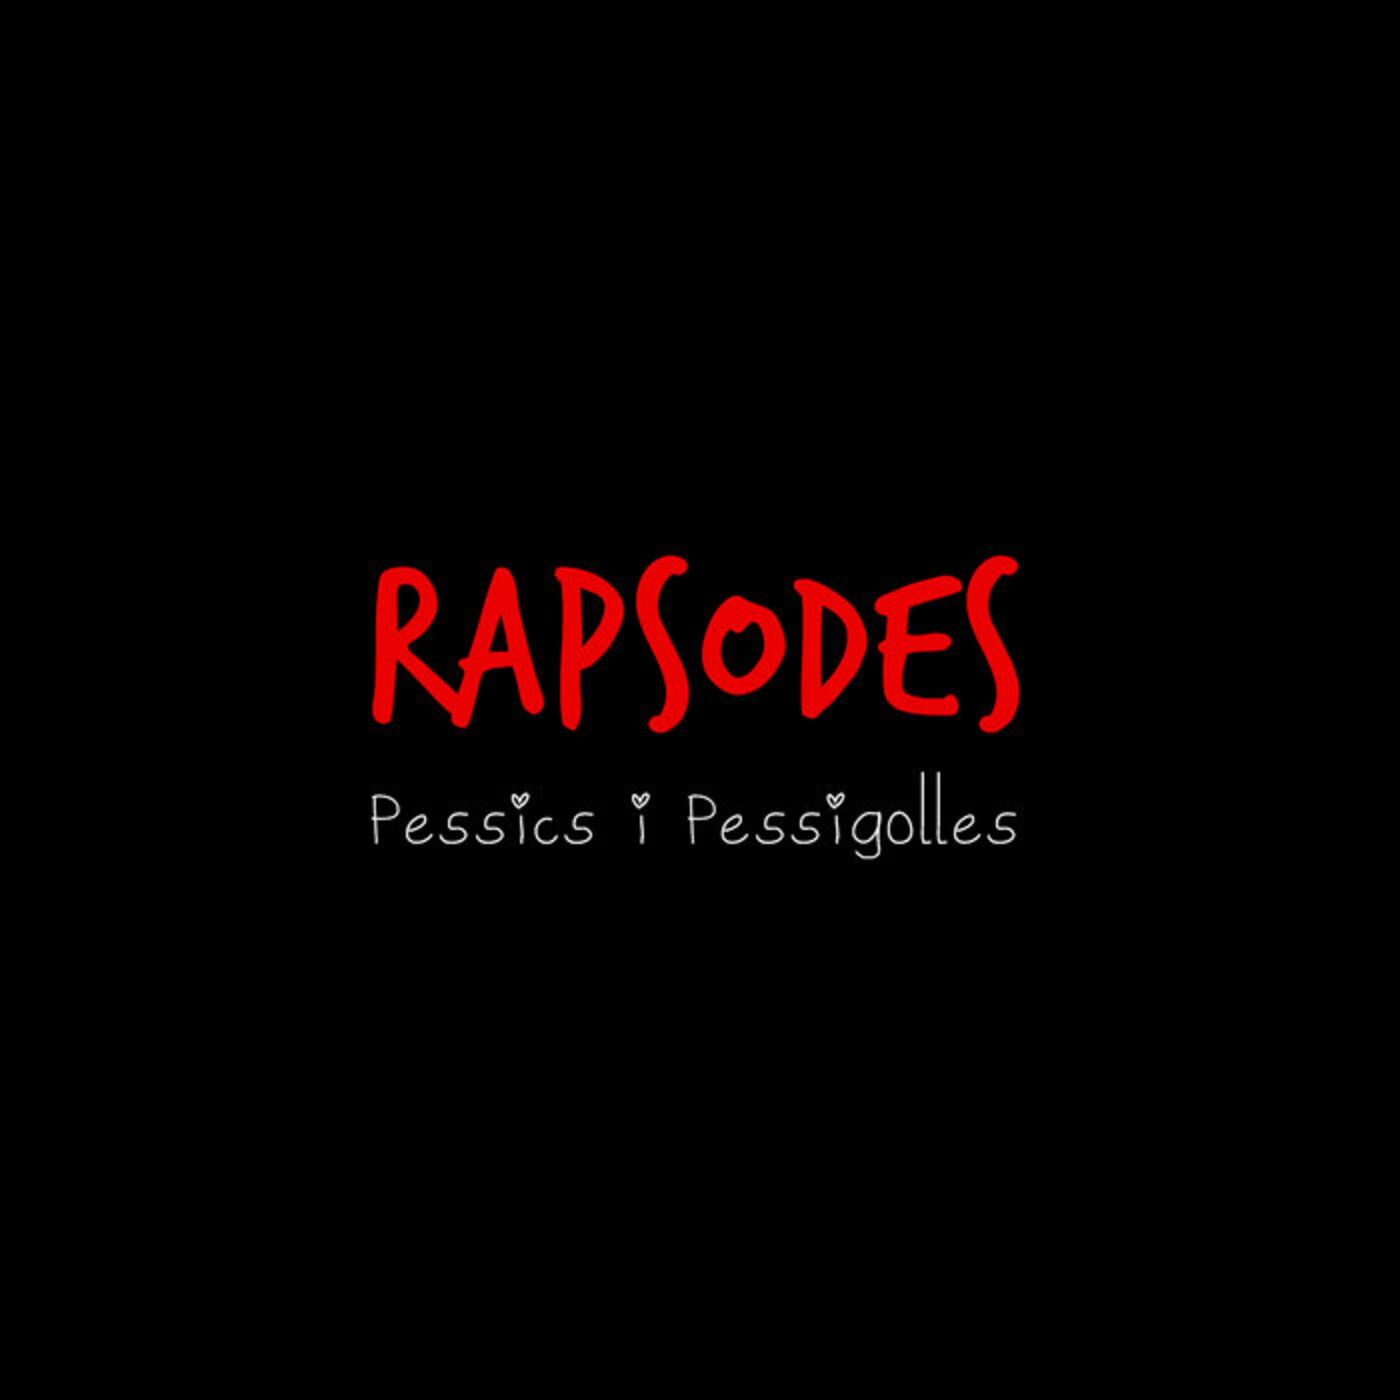 Rapsodes - Pessics i pessigolles | musica en valencià